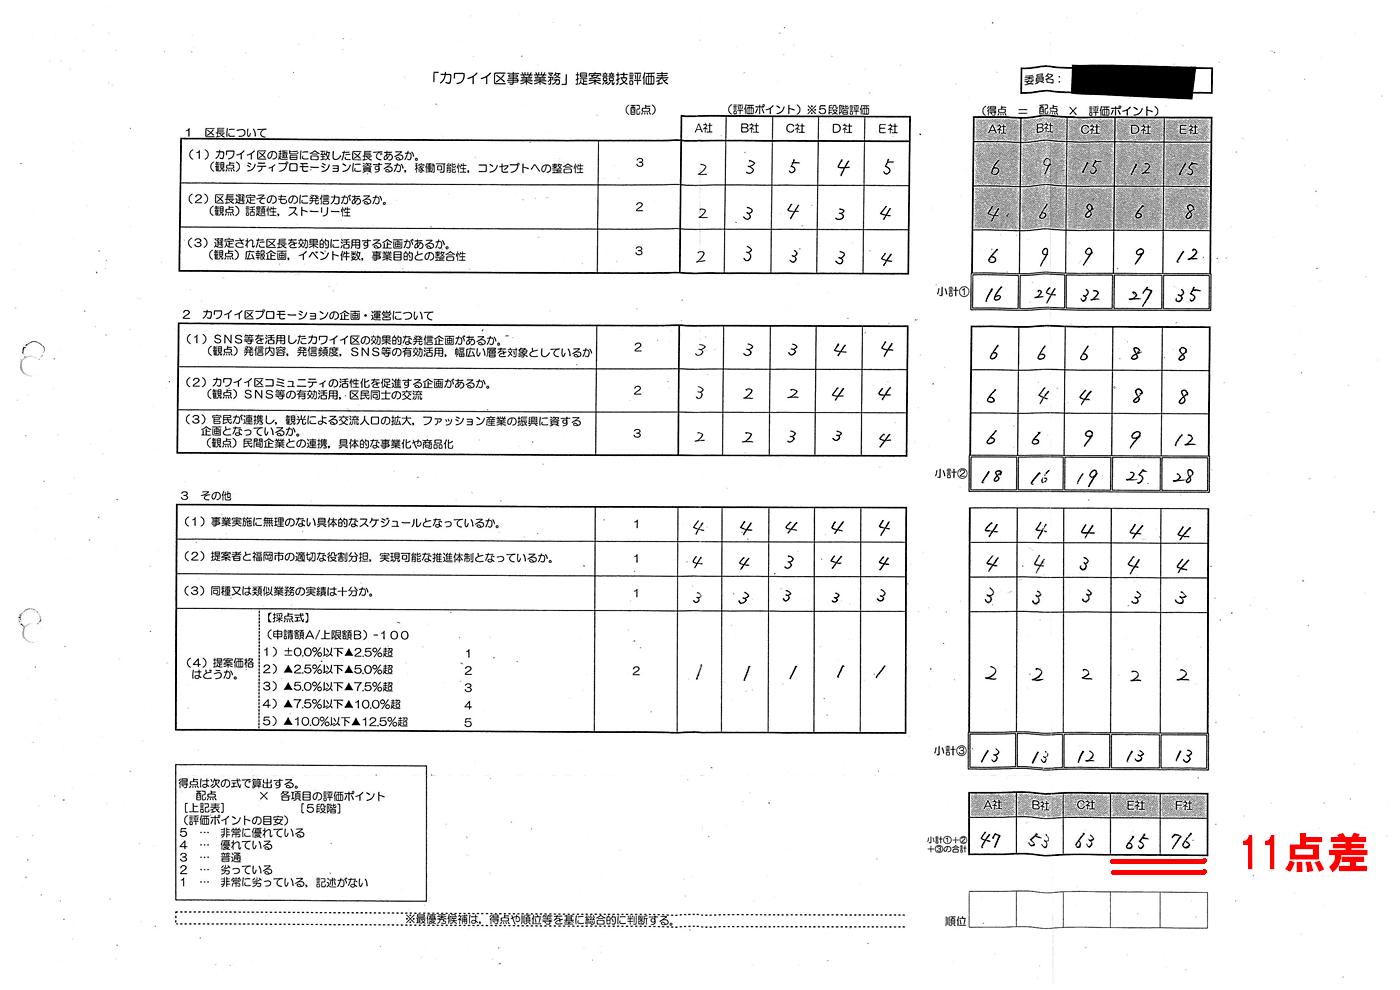 http://hunter-investigate.jp/news/2014/03/24/%E8%A9%95%E4%BE%A1.jpg